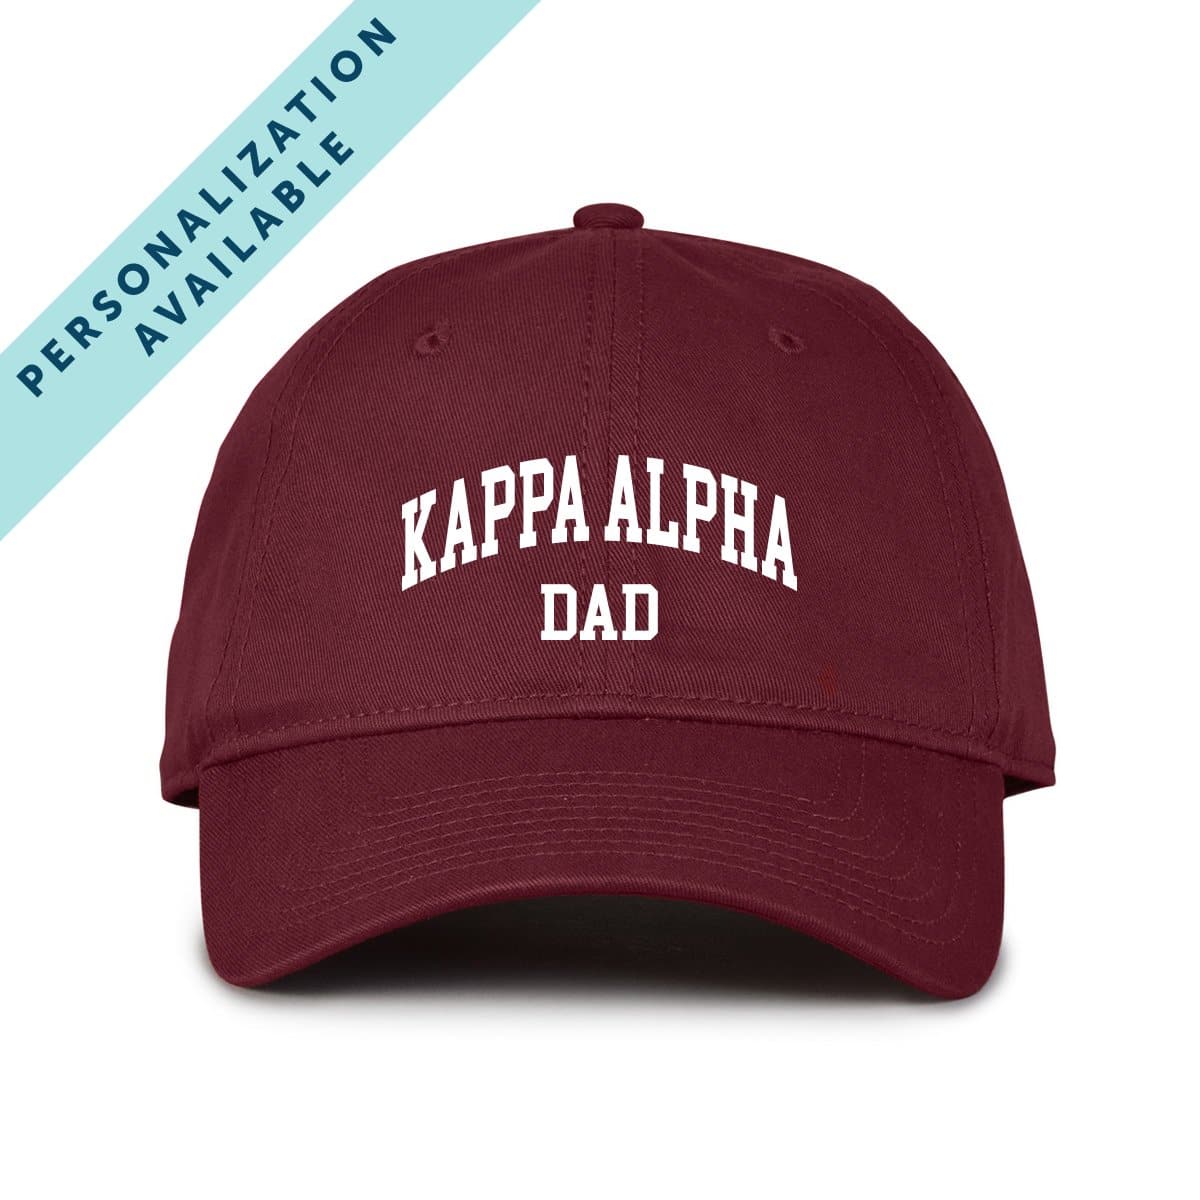 Kappa Alpha Dad – Official Cap Alpha Store Kappa Order